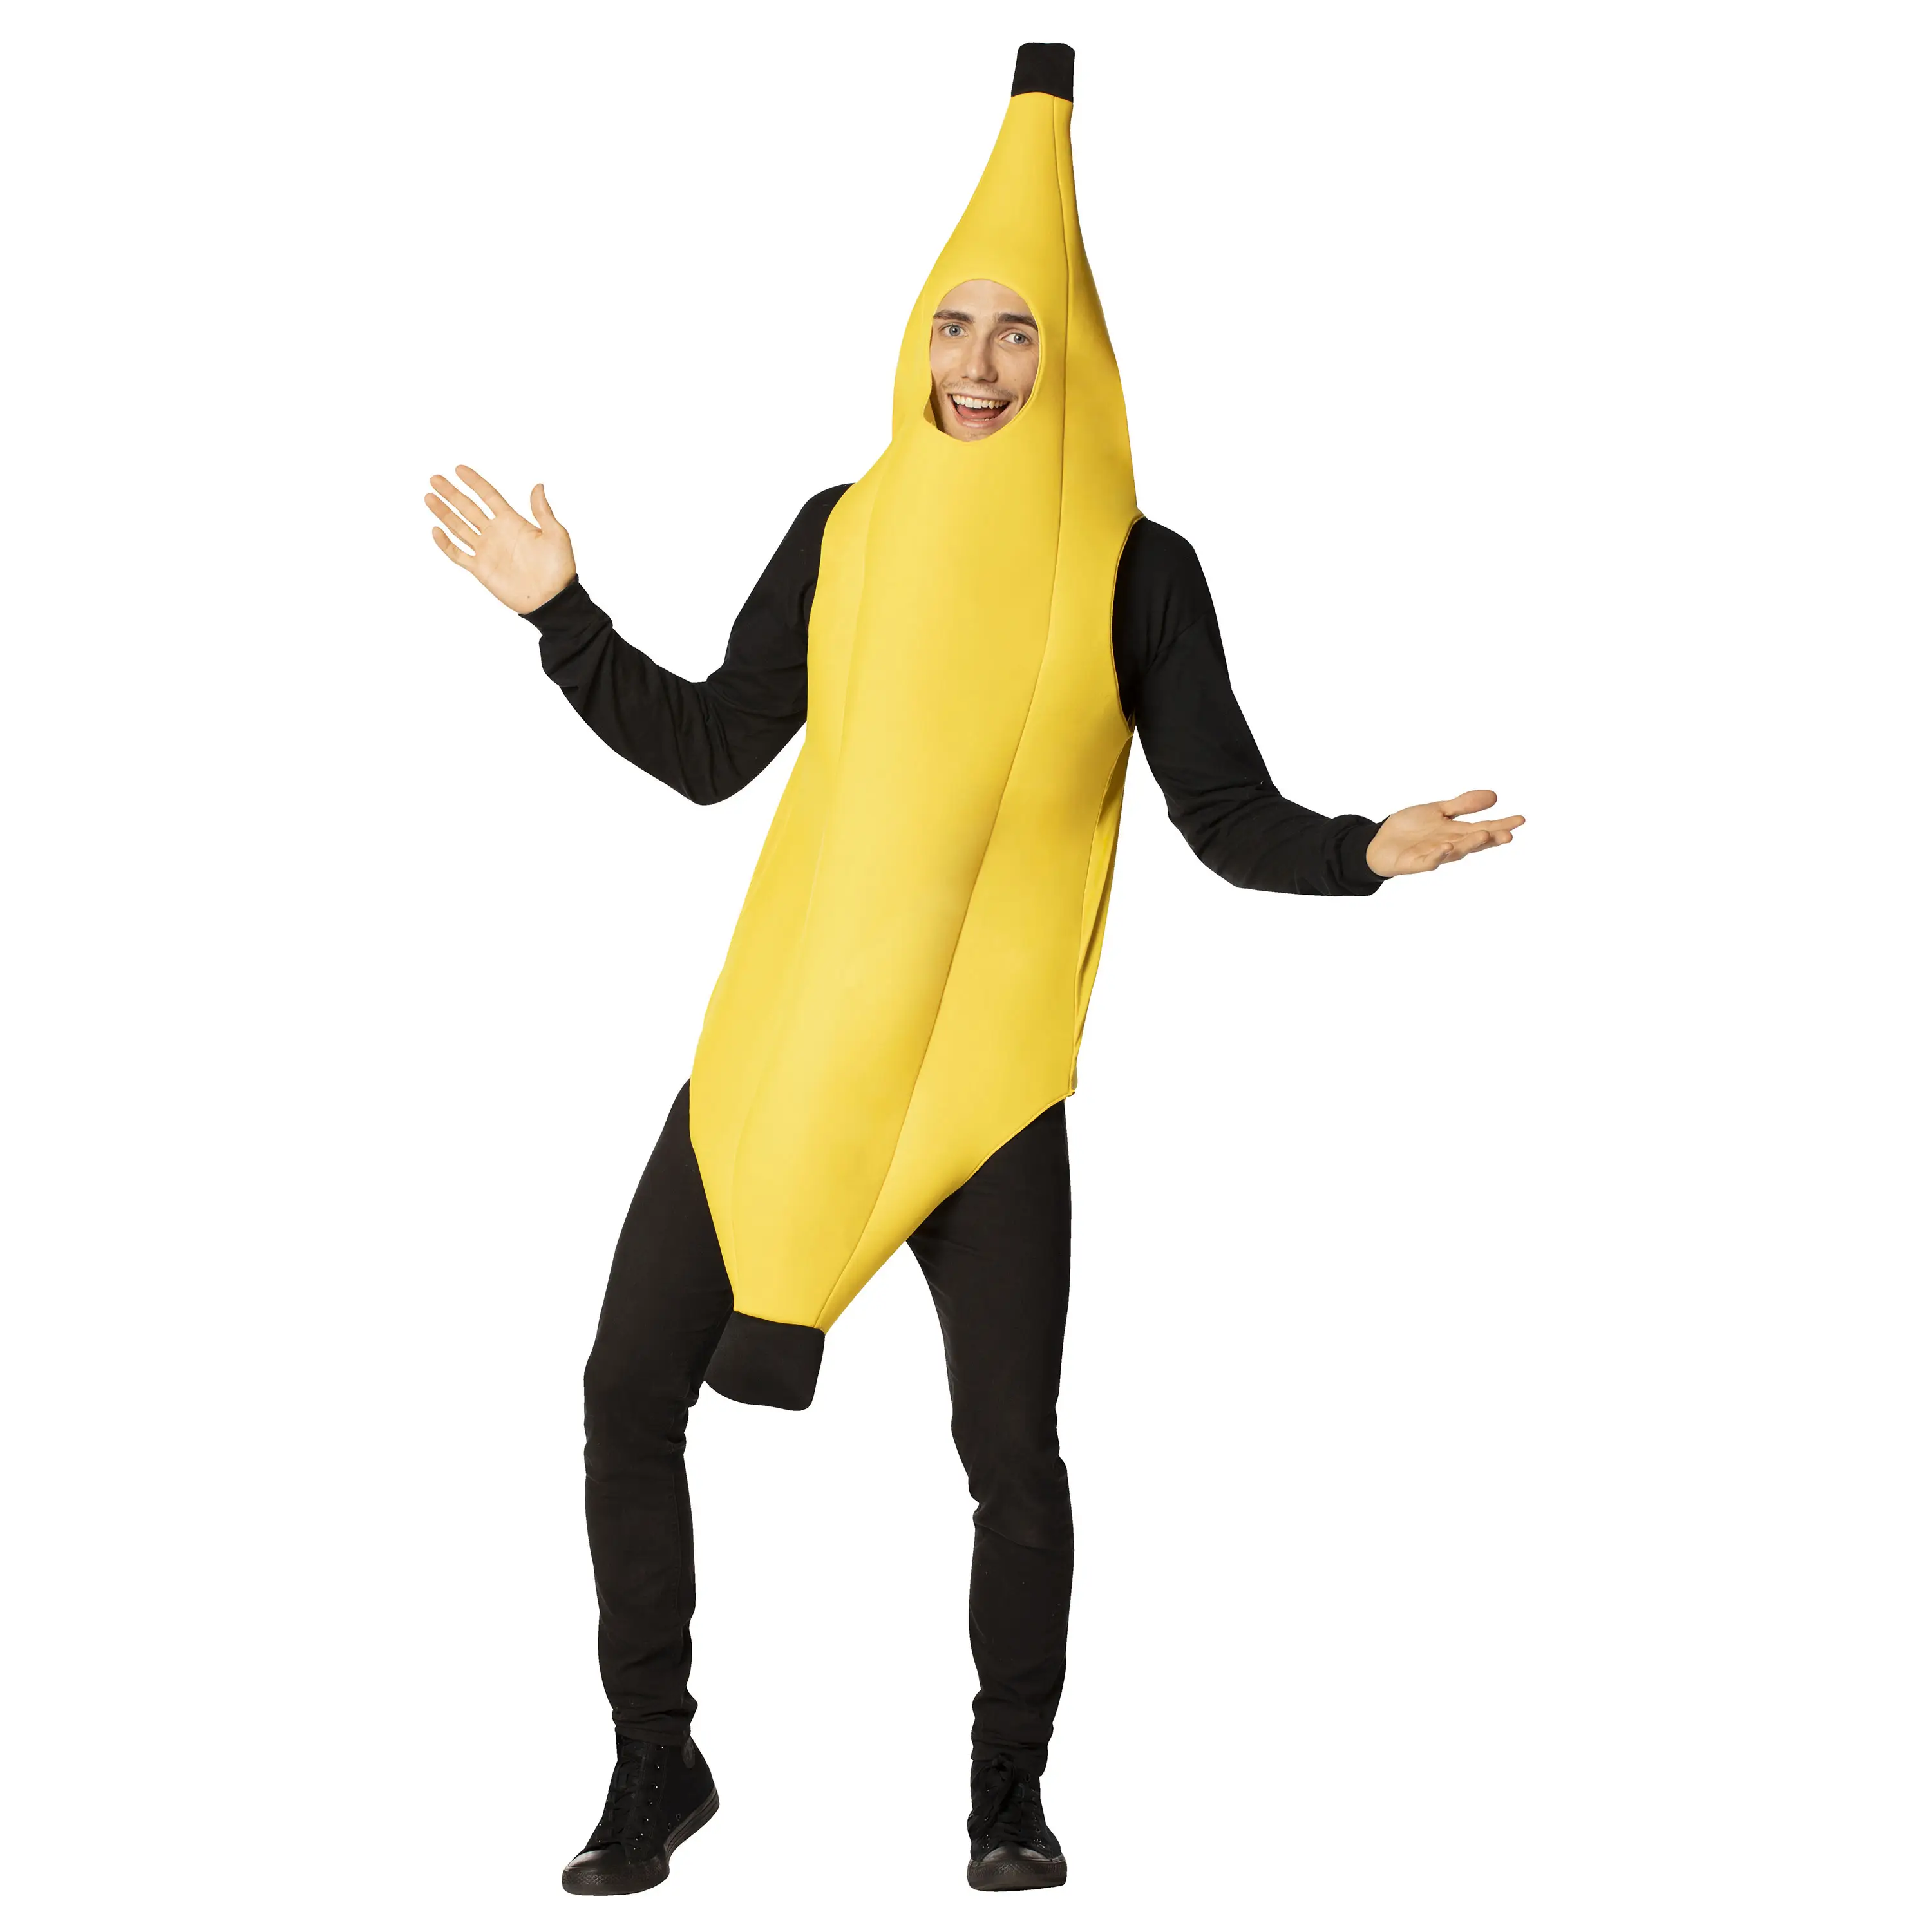 NADANBAO Halloween carnaval fête cosplay vêtements adulte banane accessoires scène performance vêtements poupée drôle costume